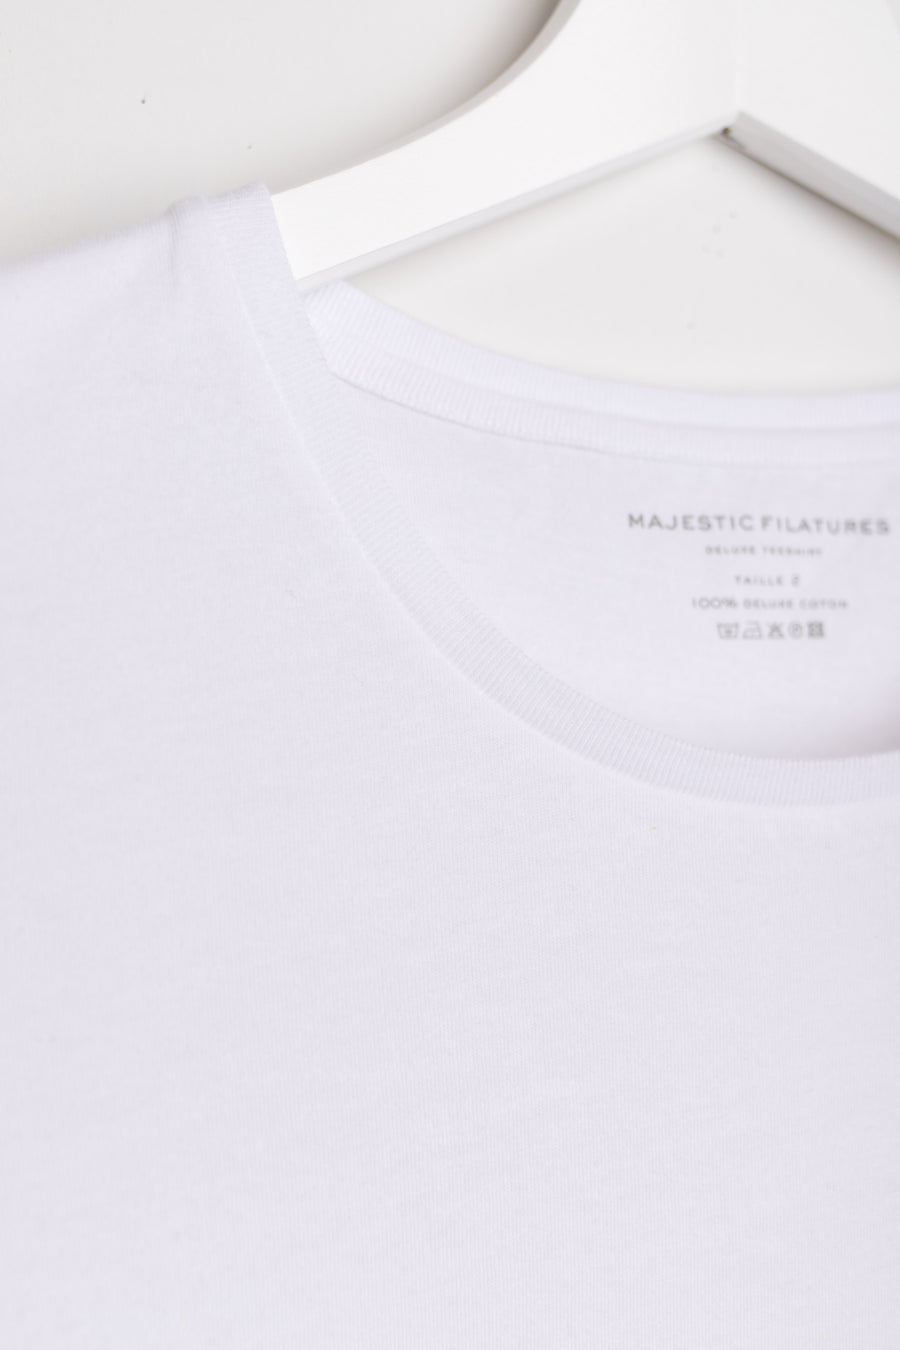 Majestic Filatures du Lion T-Shirt  blanc